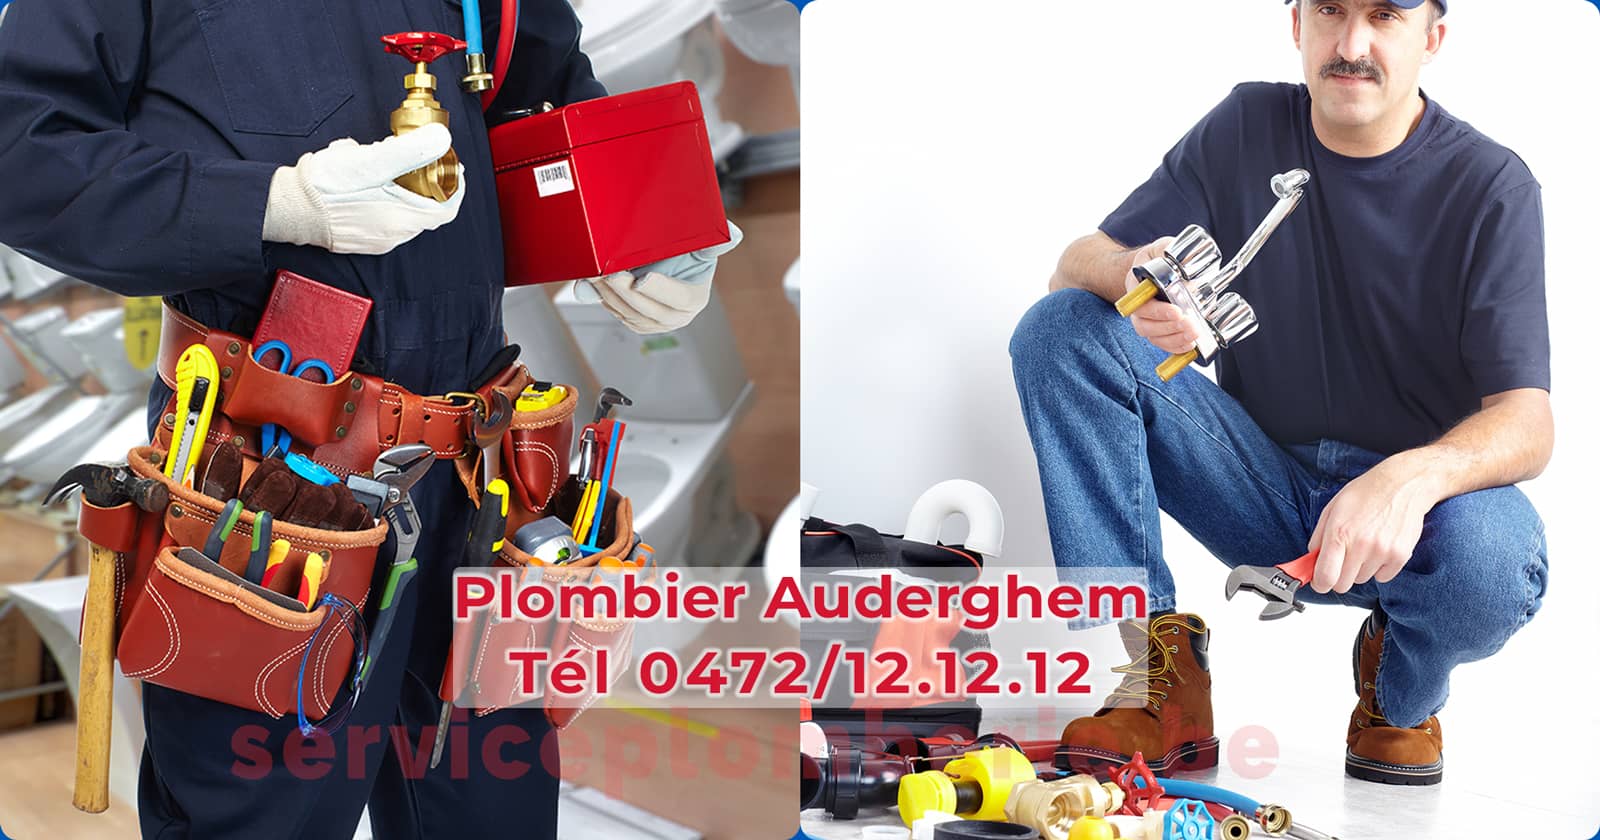 Plombier Auderghem Agréé Professionnel Service Plomberie Tél 0472/12.12.12